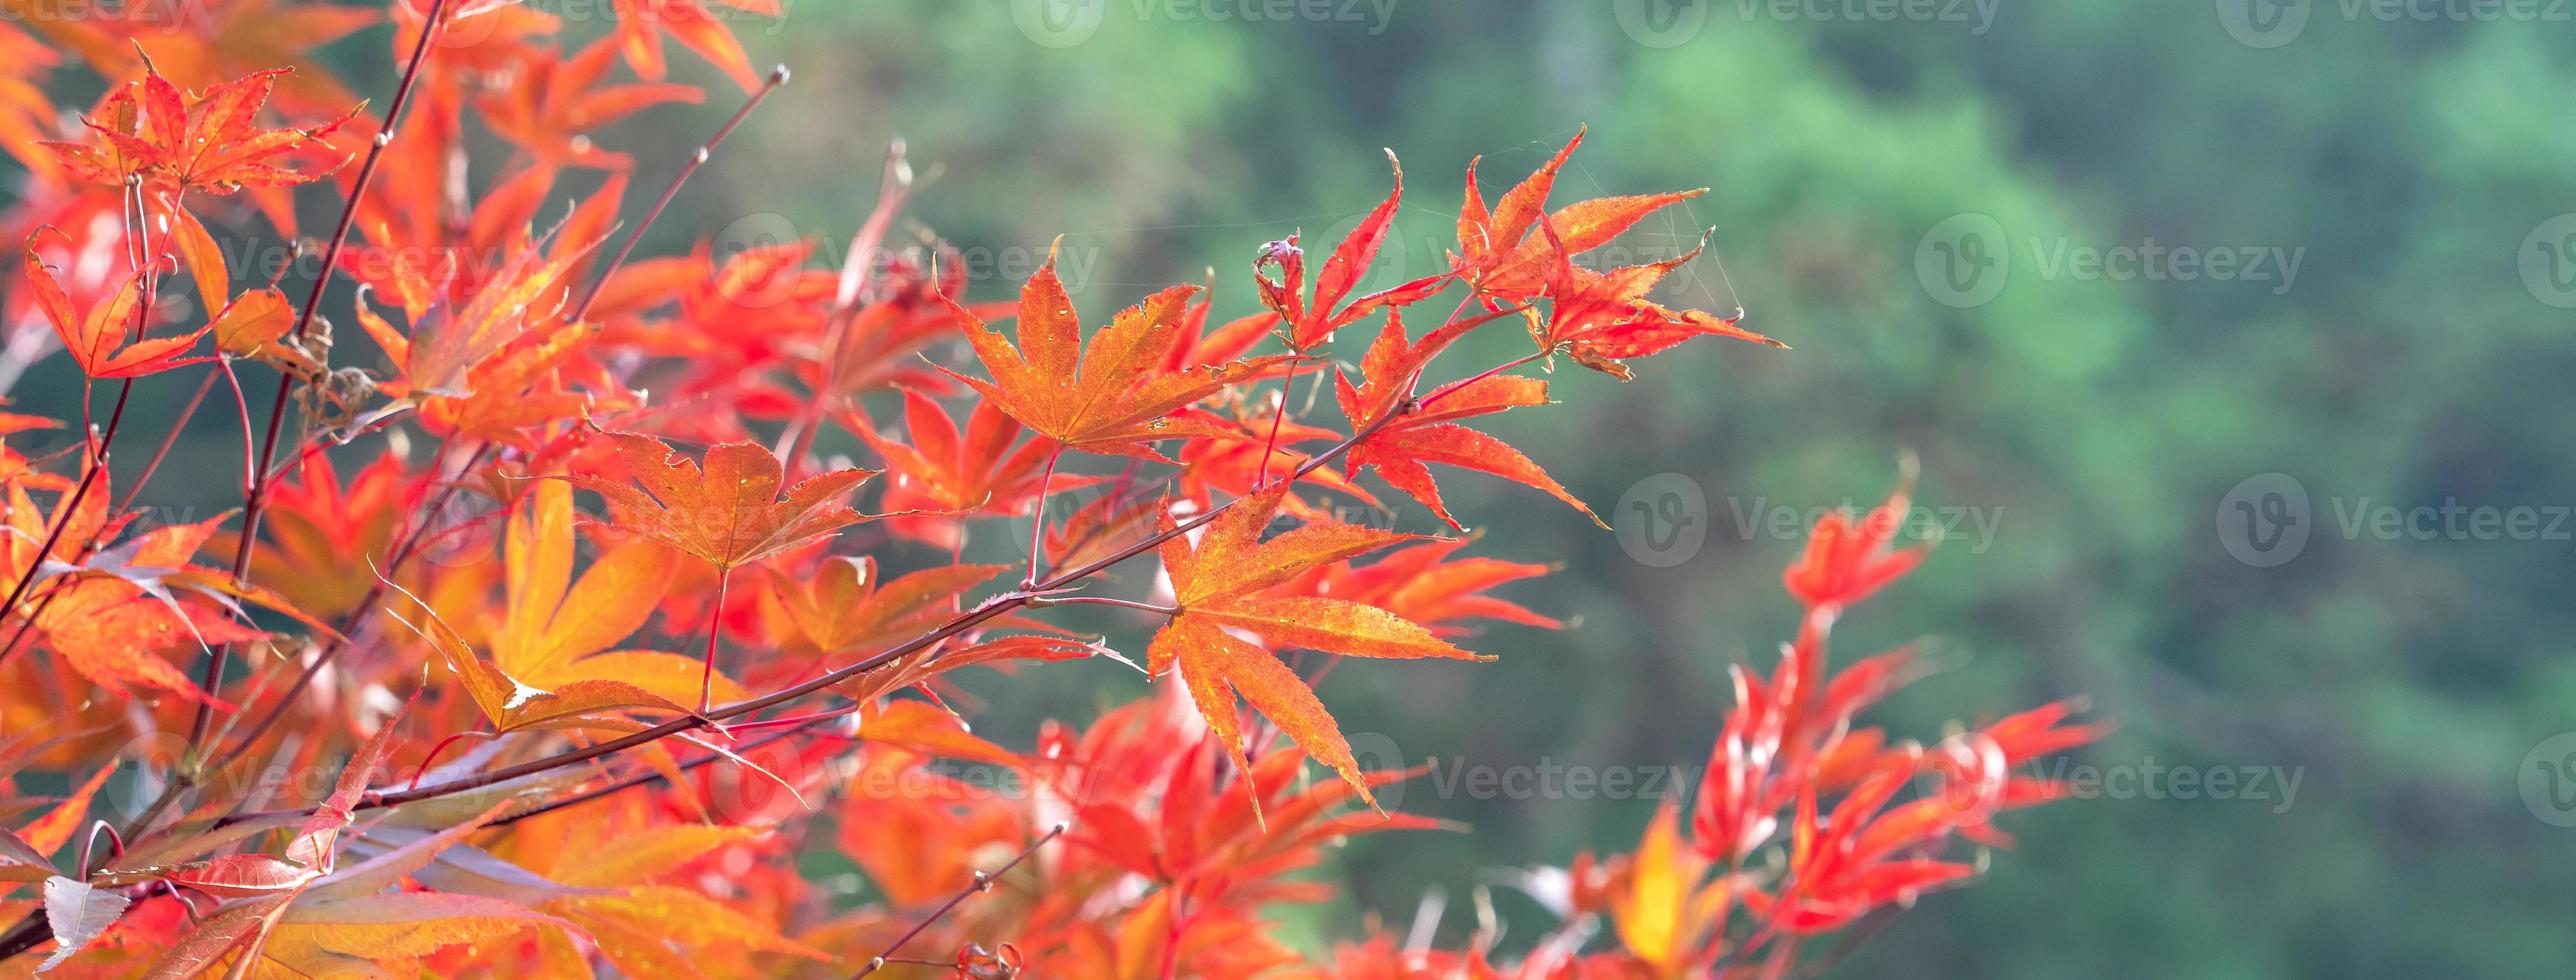 gros plan de belles feuilles d'érable isolées sur fond flou bokeh en automne. photo